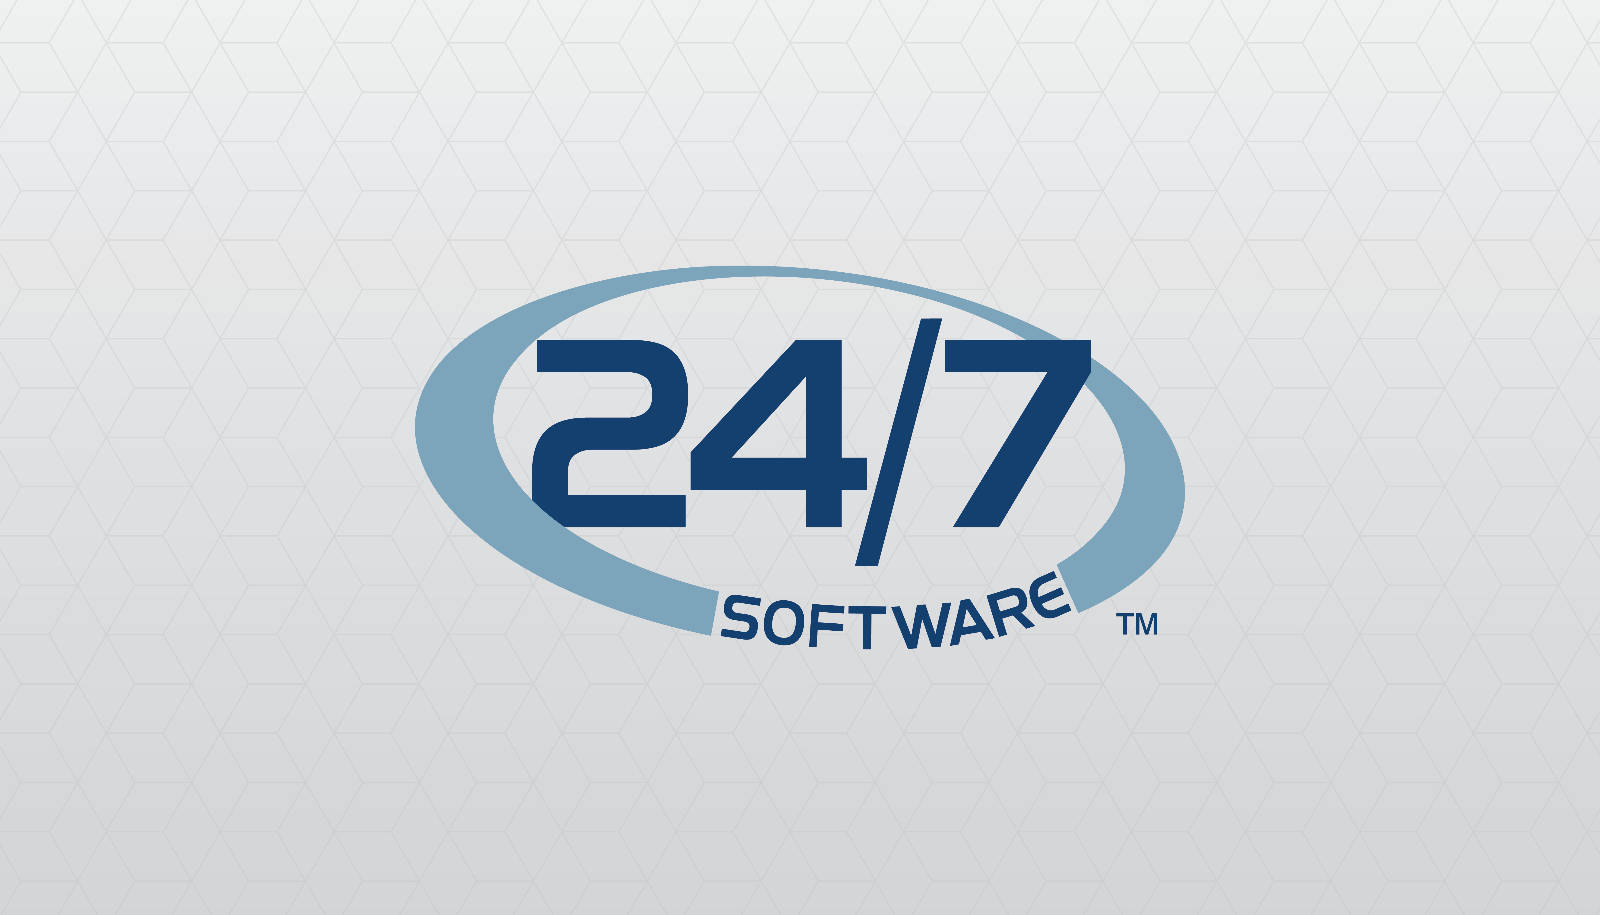 24/7verfügbare Software. Wallpaper